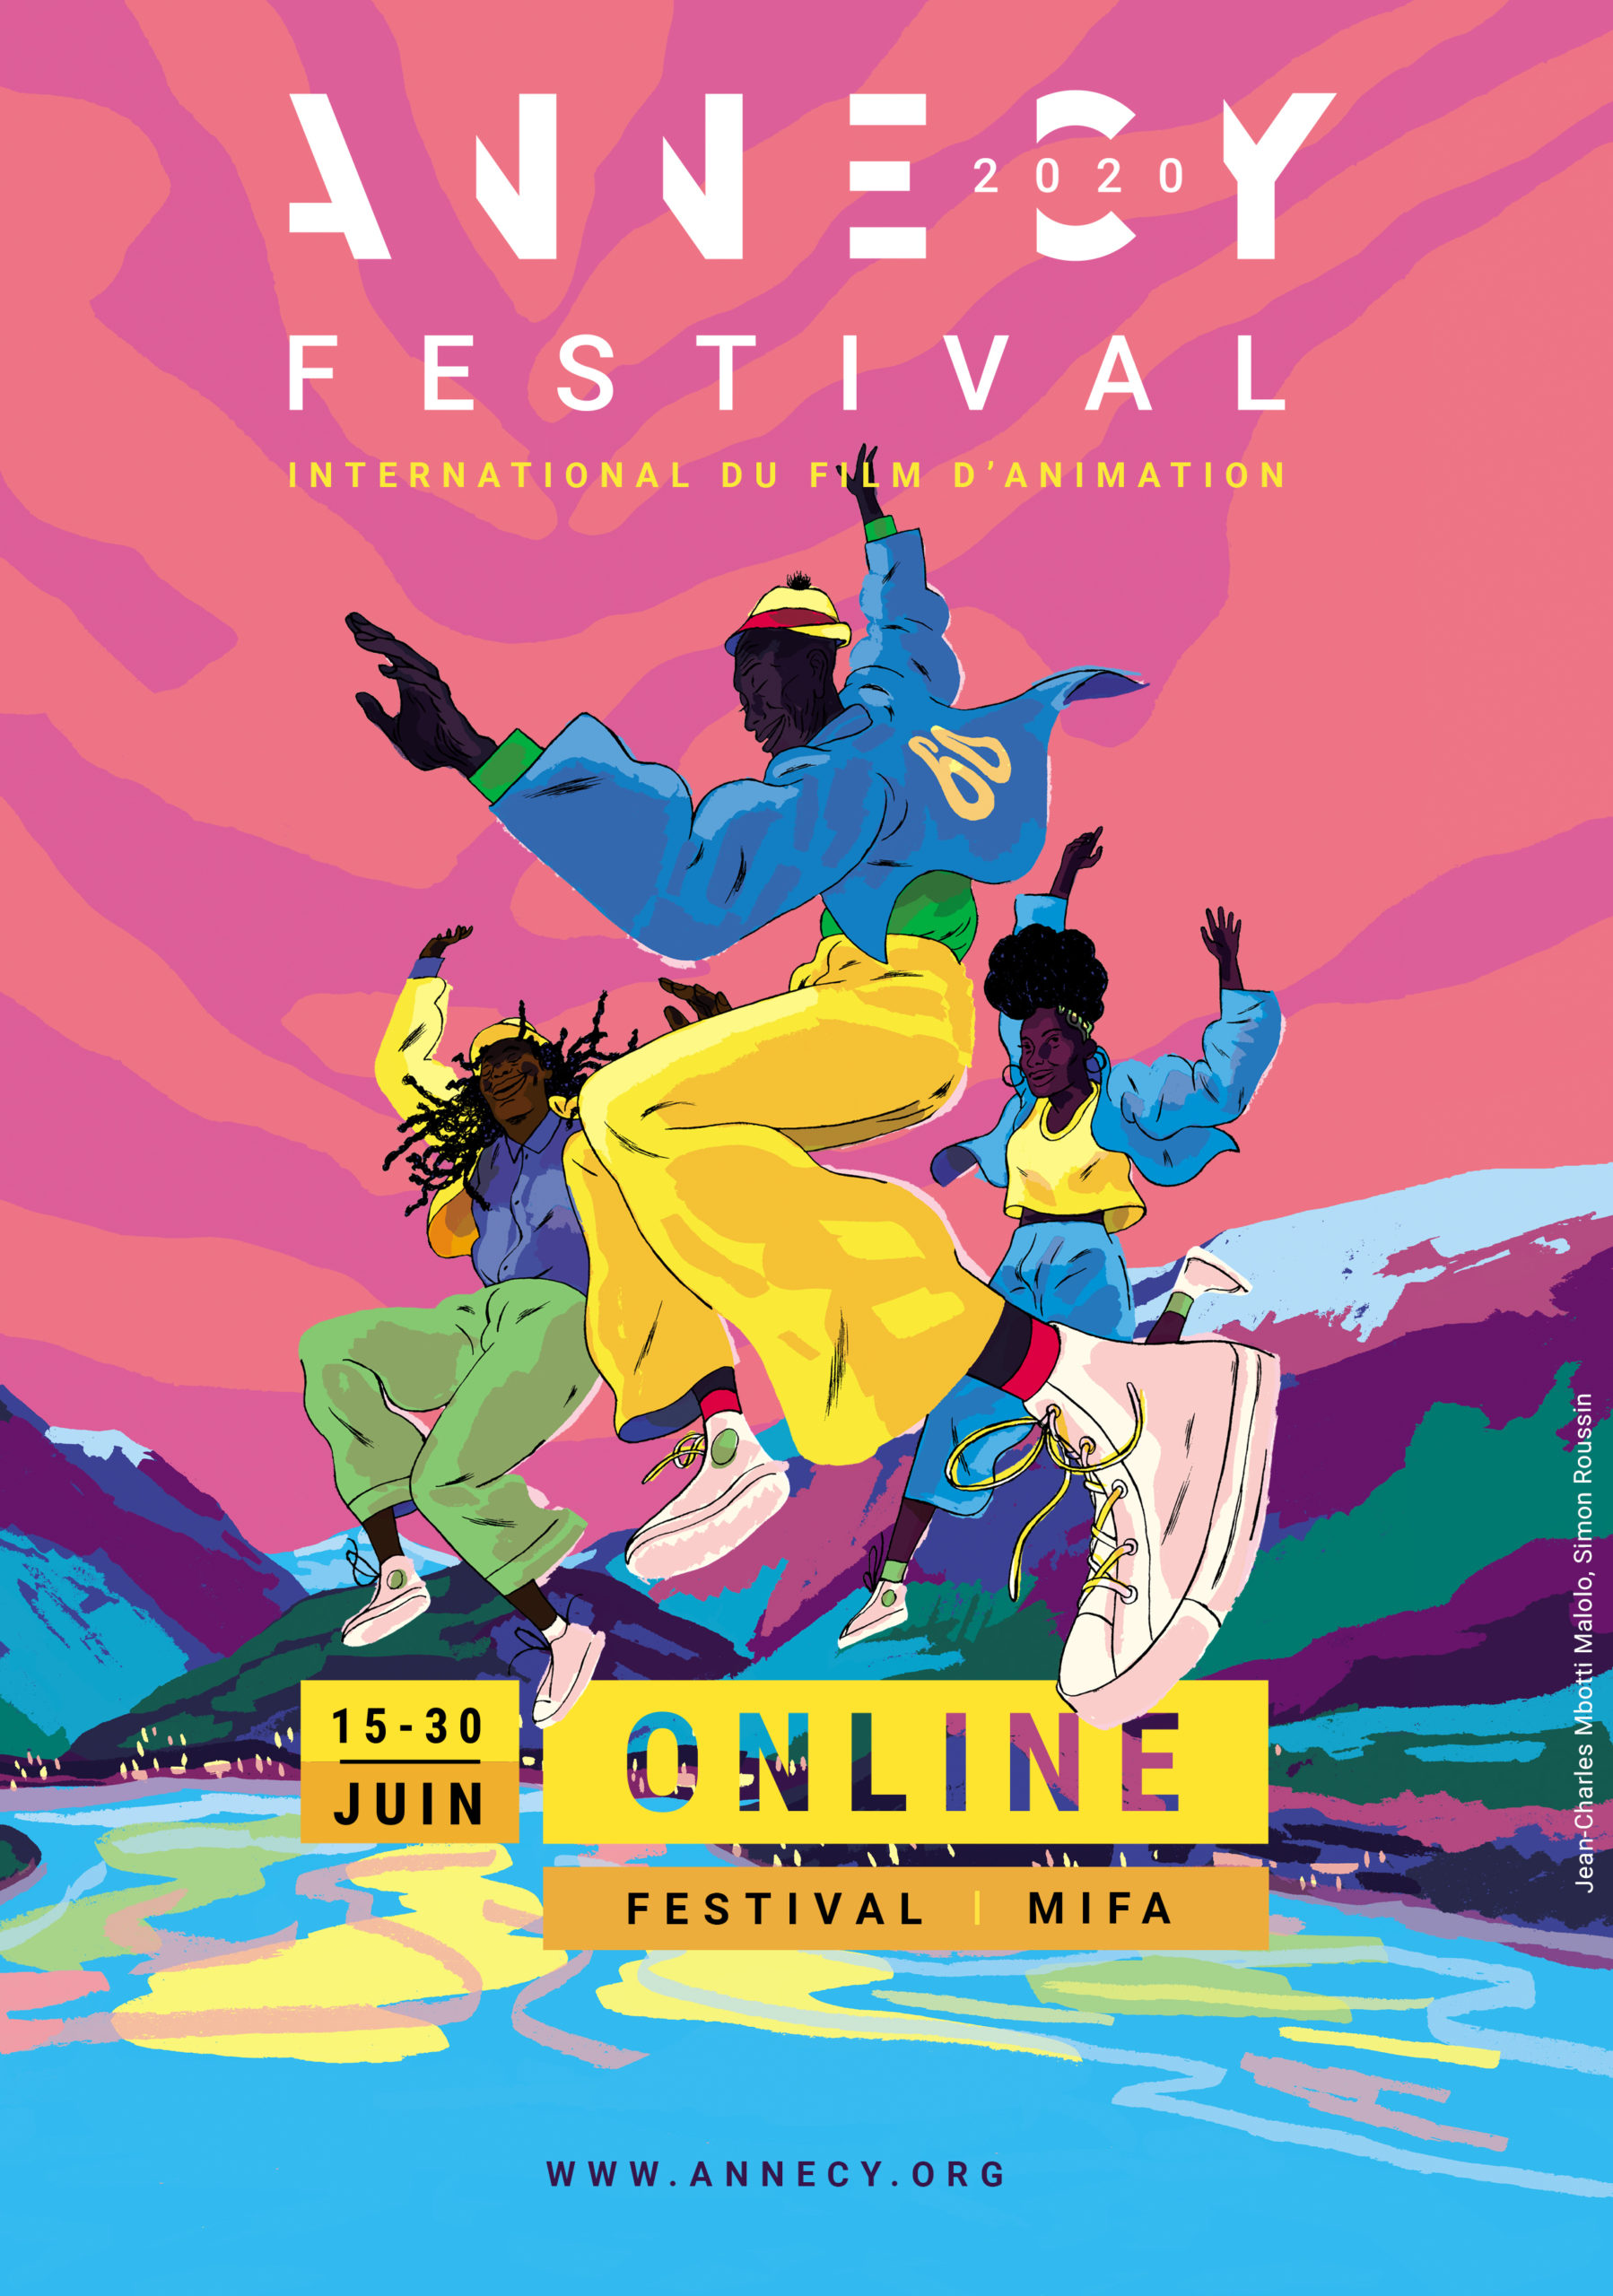 Découvrez le festival d’Annecy online du 15 au 30 juin 2020 !